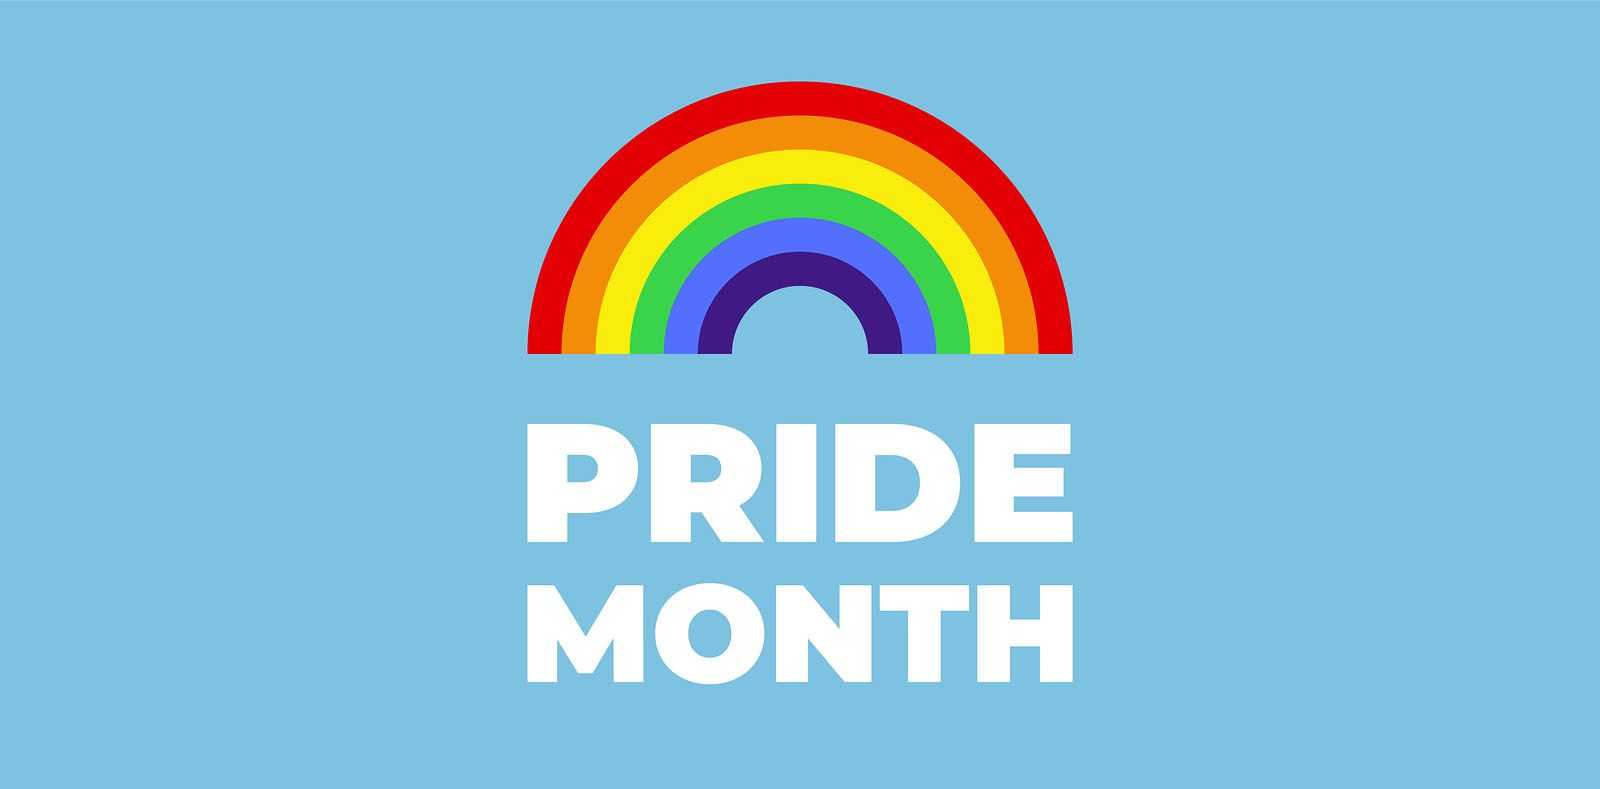 https://en.wikipedia.org/wiki/Pride_Month